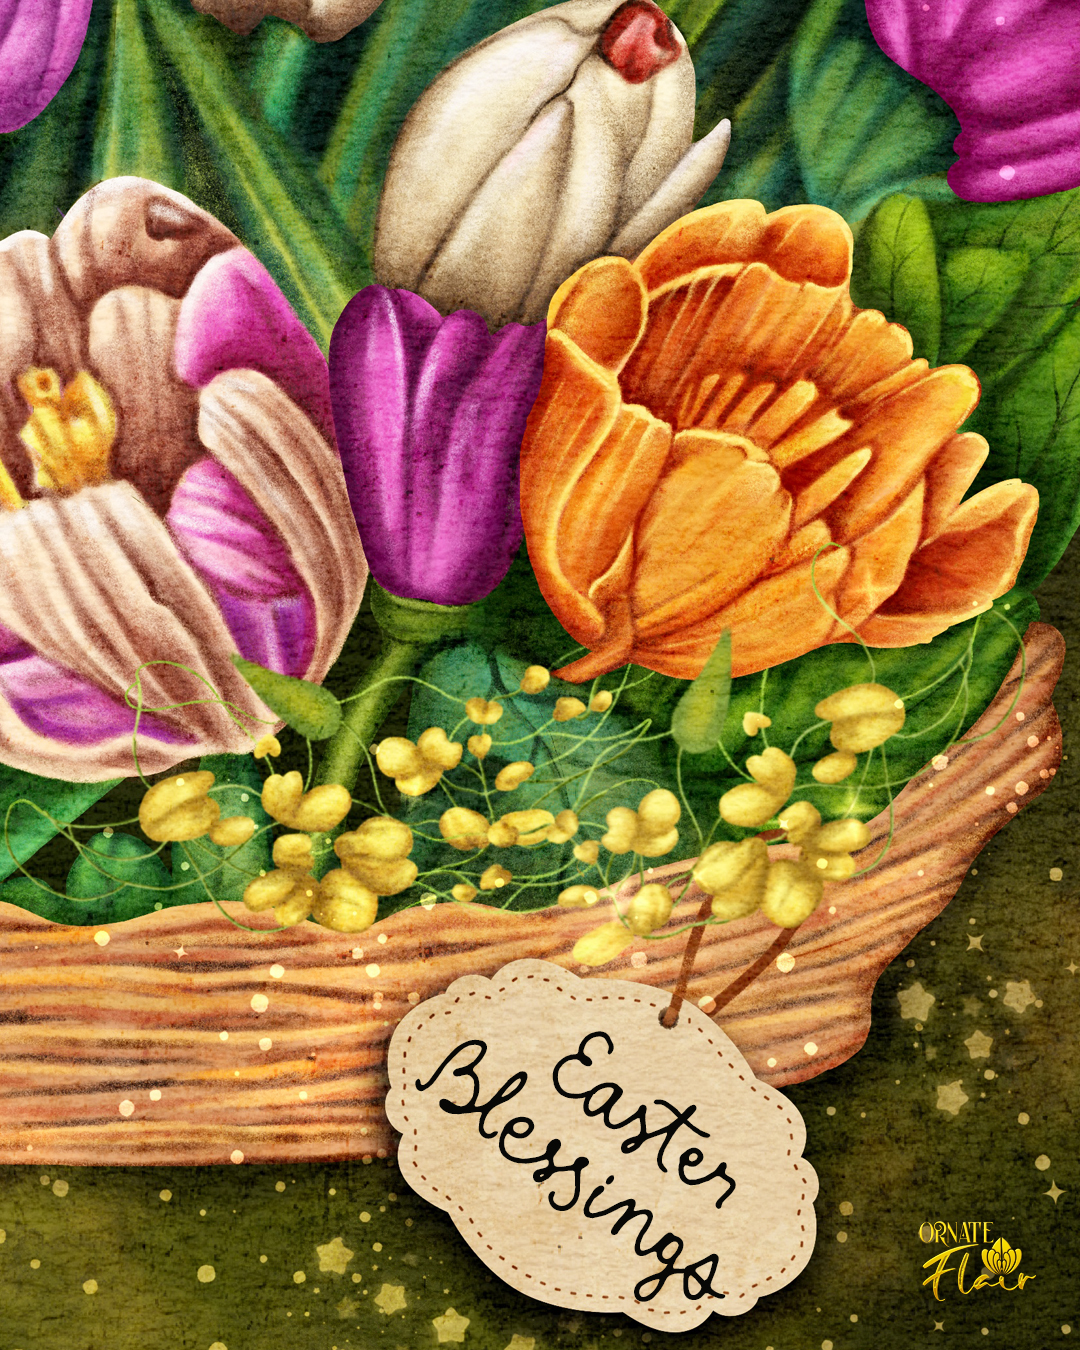 Easter Basket Detail 2, Basket of Flowers, Basket of Spring Flowers, Floral art, floral illustration, Easter, Easter illustrations, Easter art for licensing, ornateflair, Lesley Smitheringale